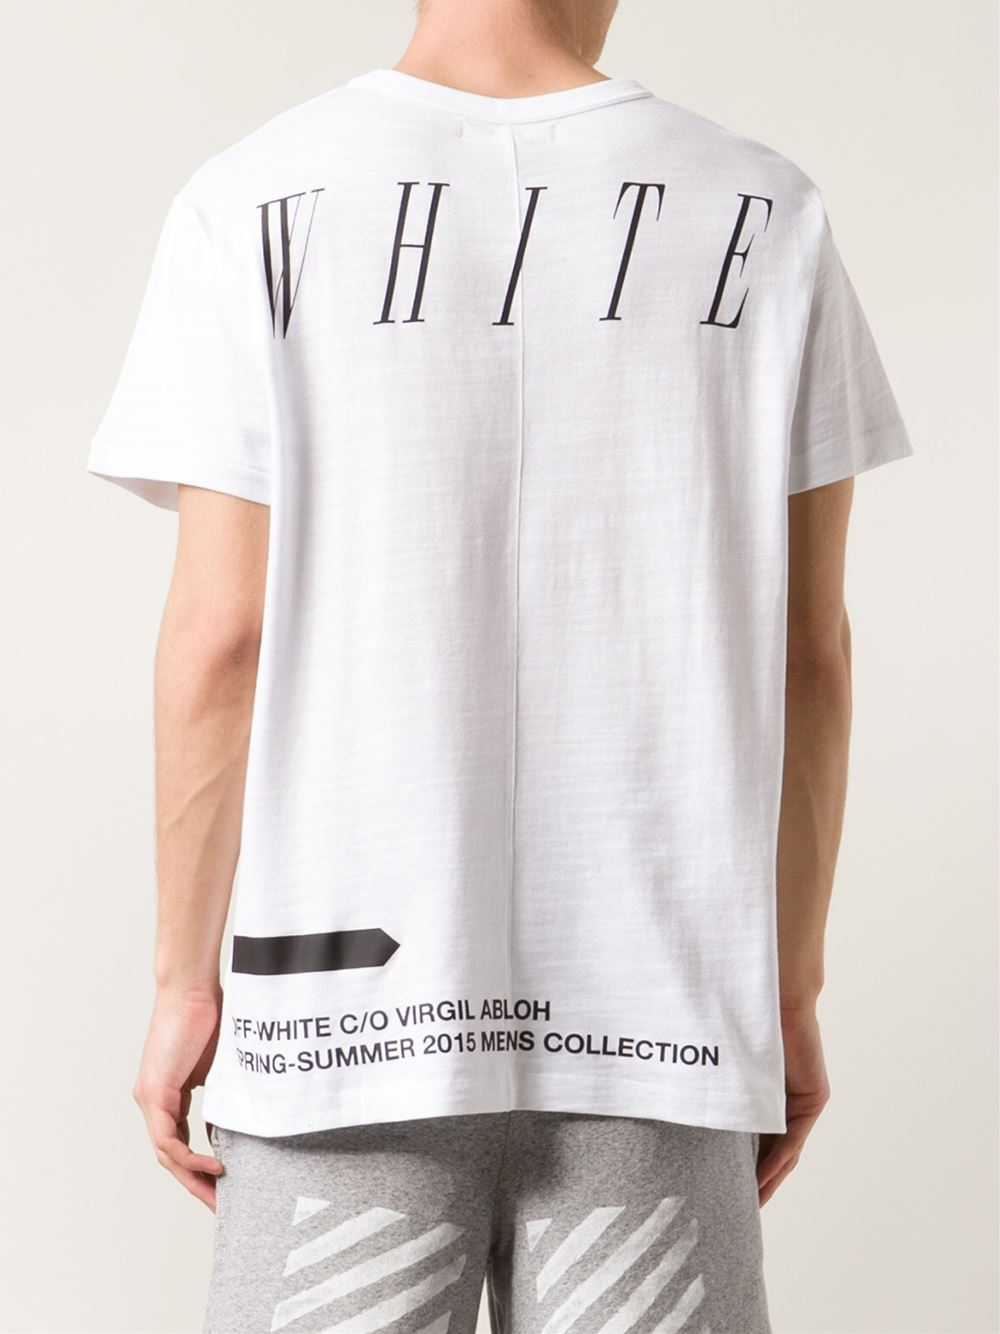 Off-White c/o Virgil Abloh Moving Still T-Shirt in White for Men - Lyst